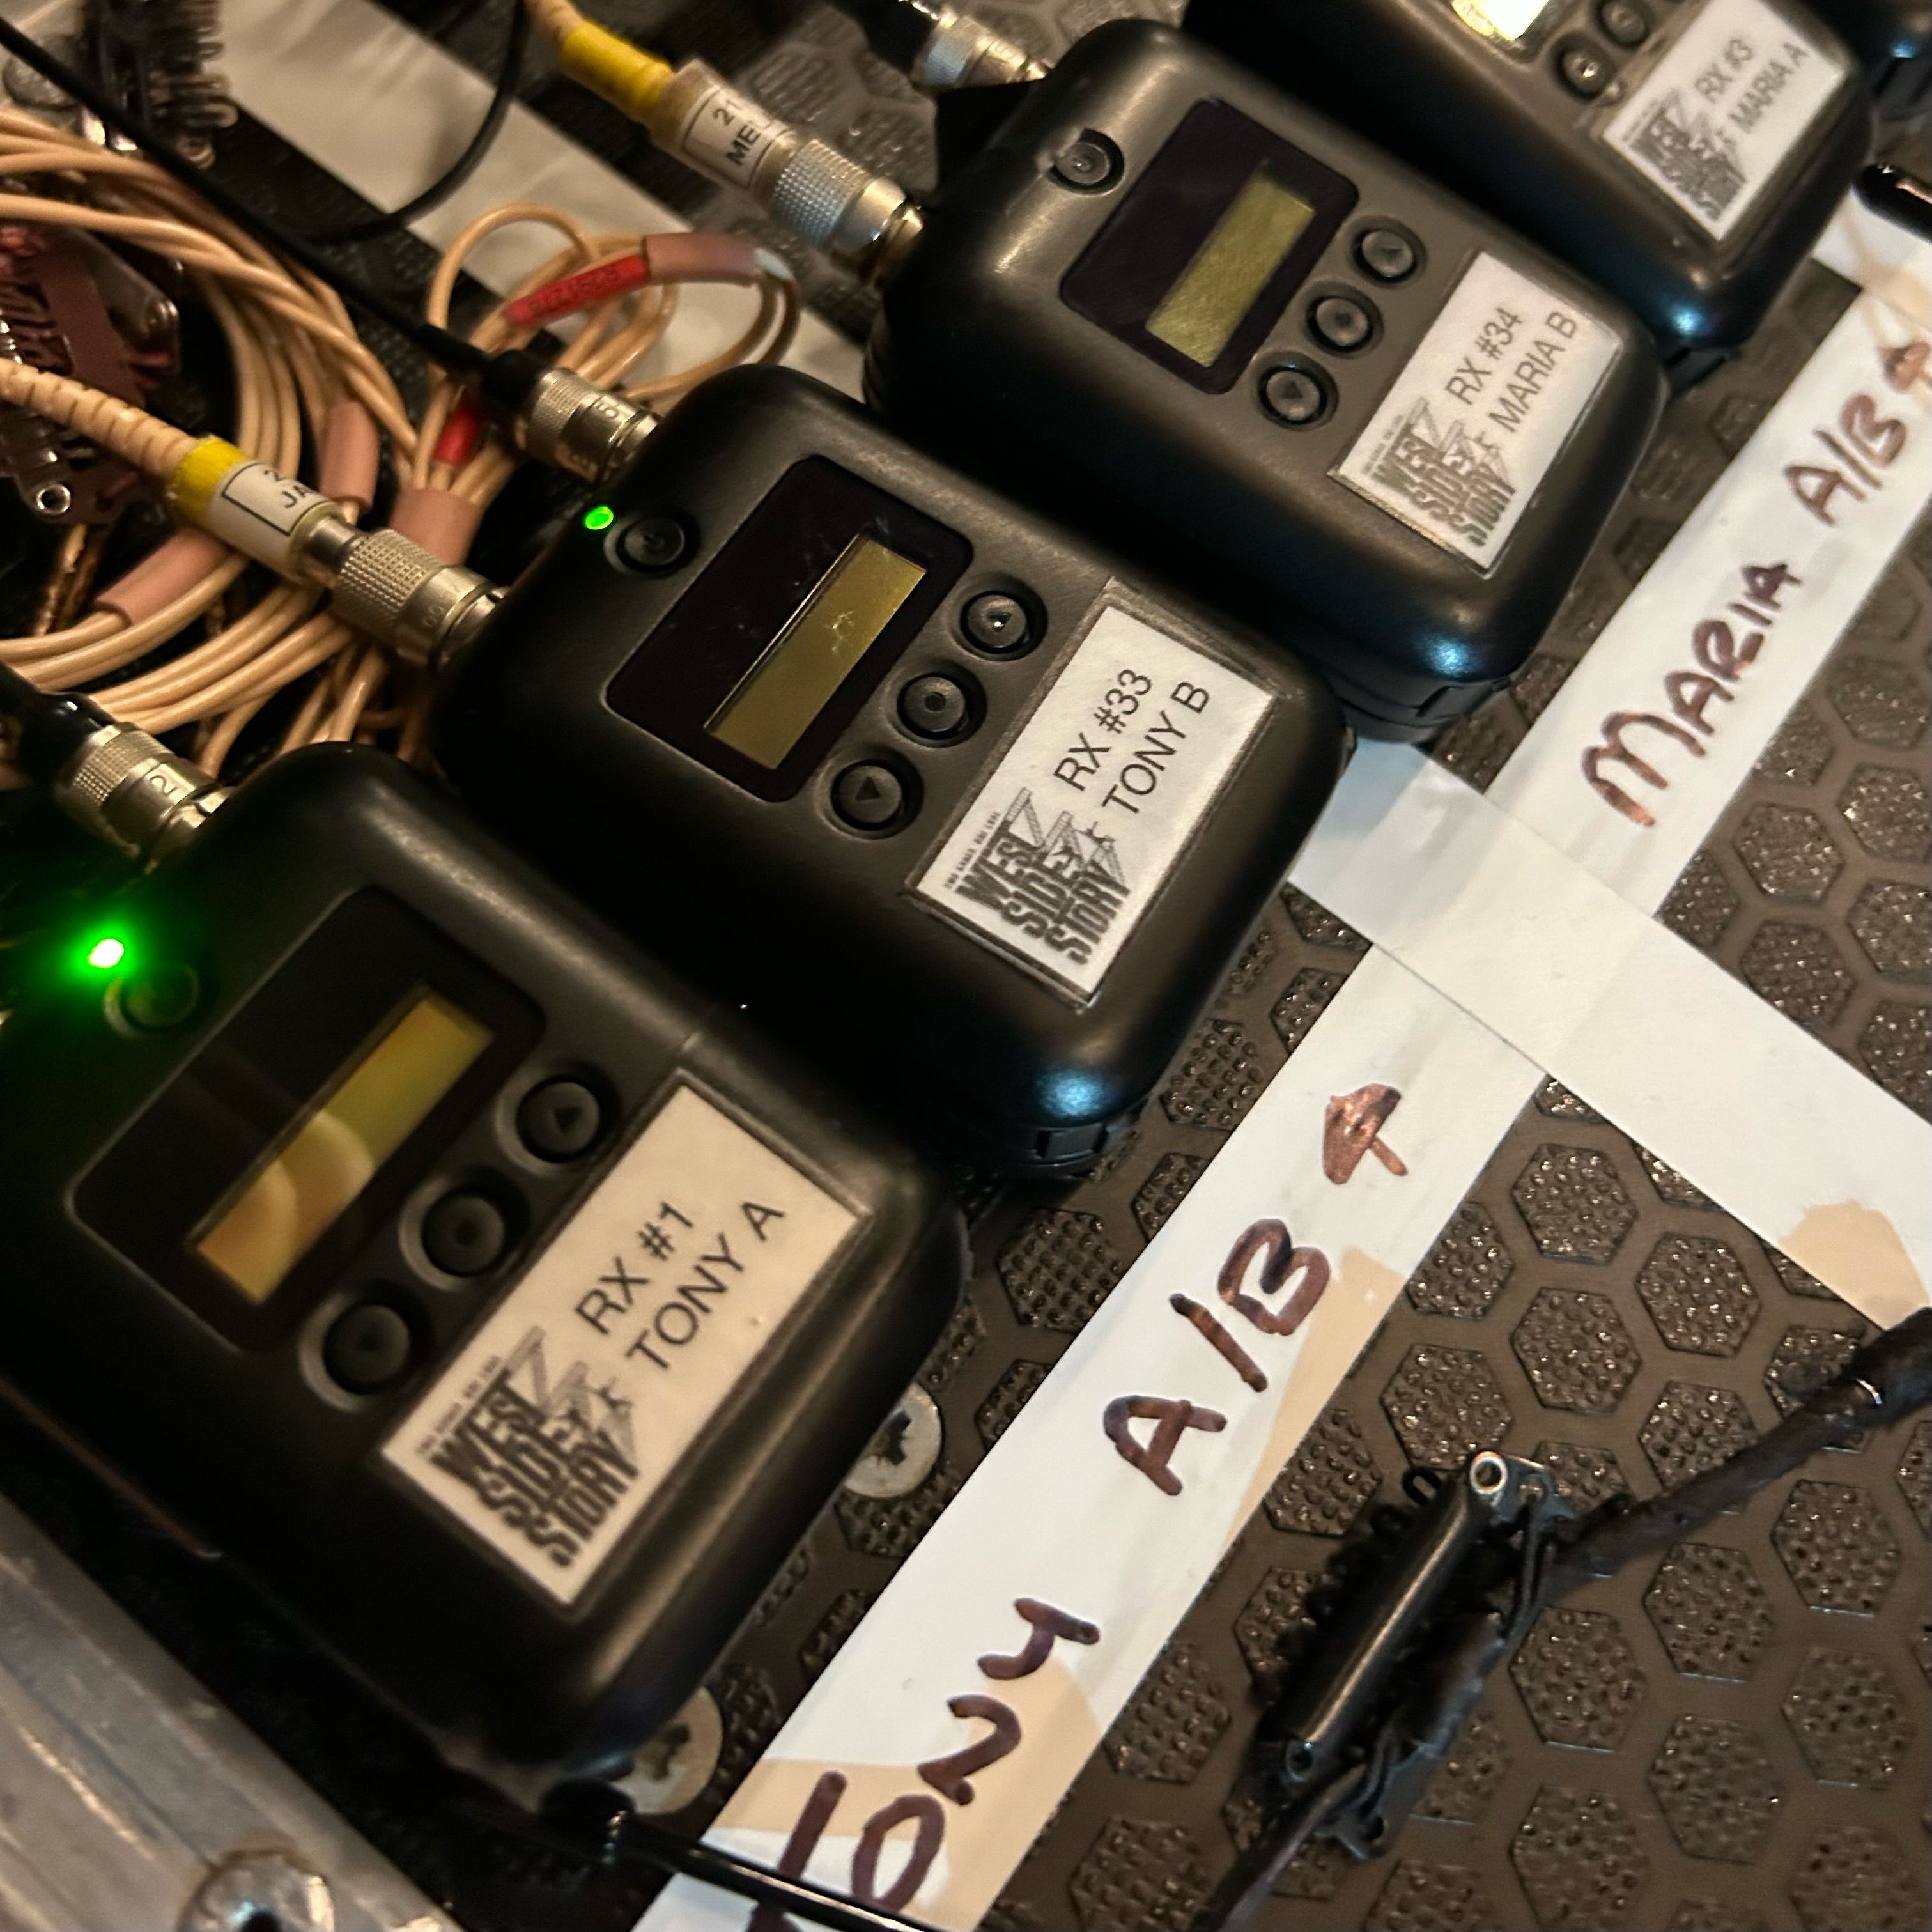 Phil Hurley [Director, Stage Sound Services] sieht die Sennheiser SK 6212 Mini-Taschensender als Maßstab für fortschrittliche, digitale Übertragungstechnik in modernen Audioproduktionen (Bild mit freundlicher Genehmigung von Aaron Barker)